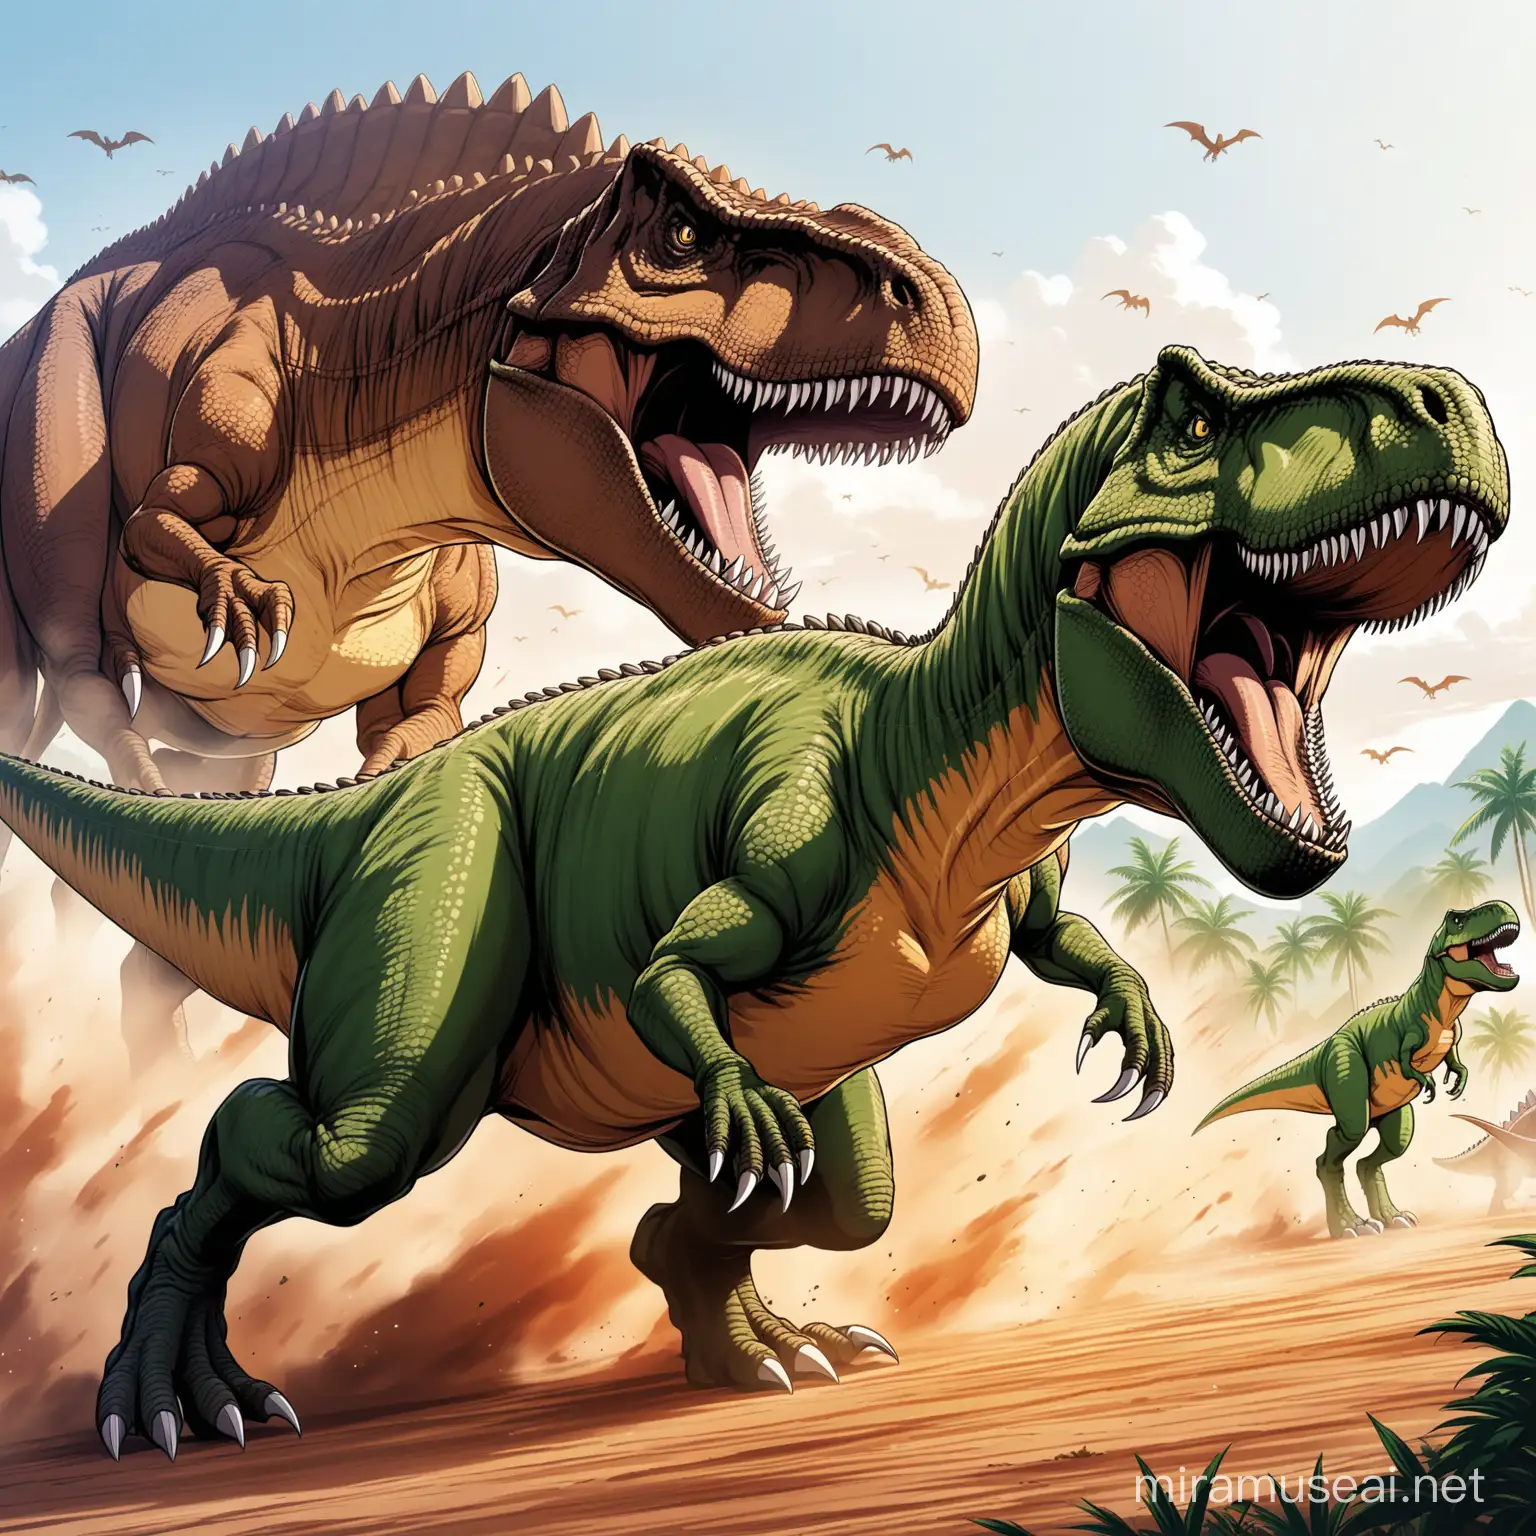 Anime style  Tyrannosaurus rex attacking another dinosaur 